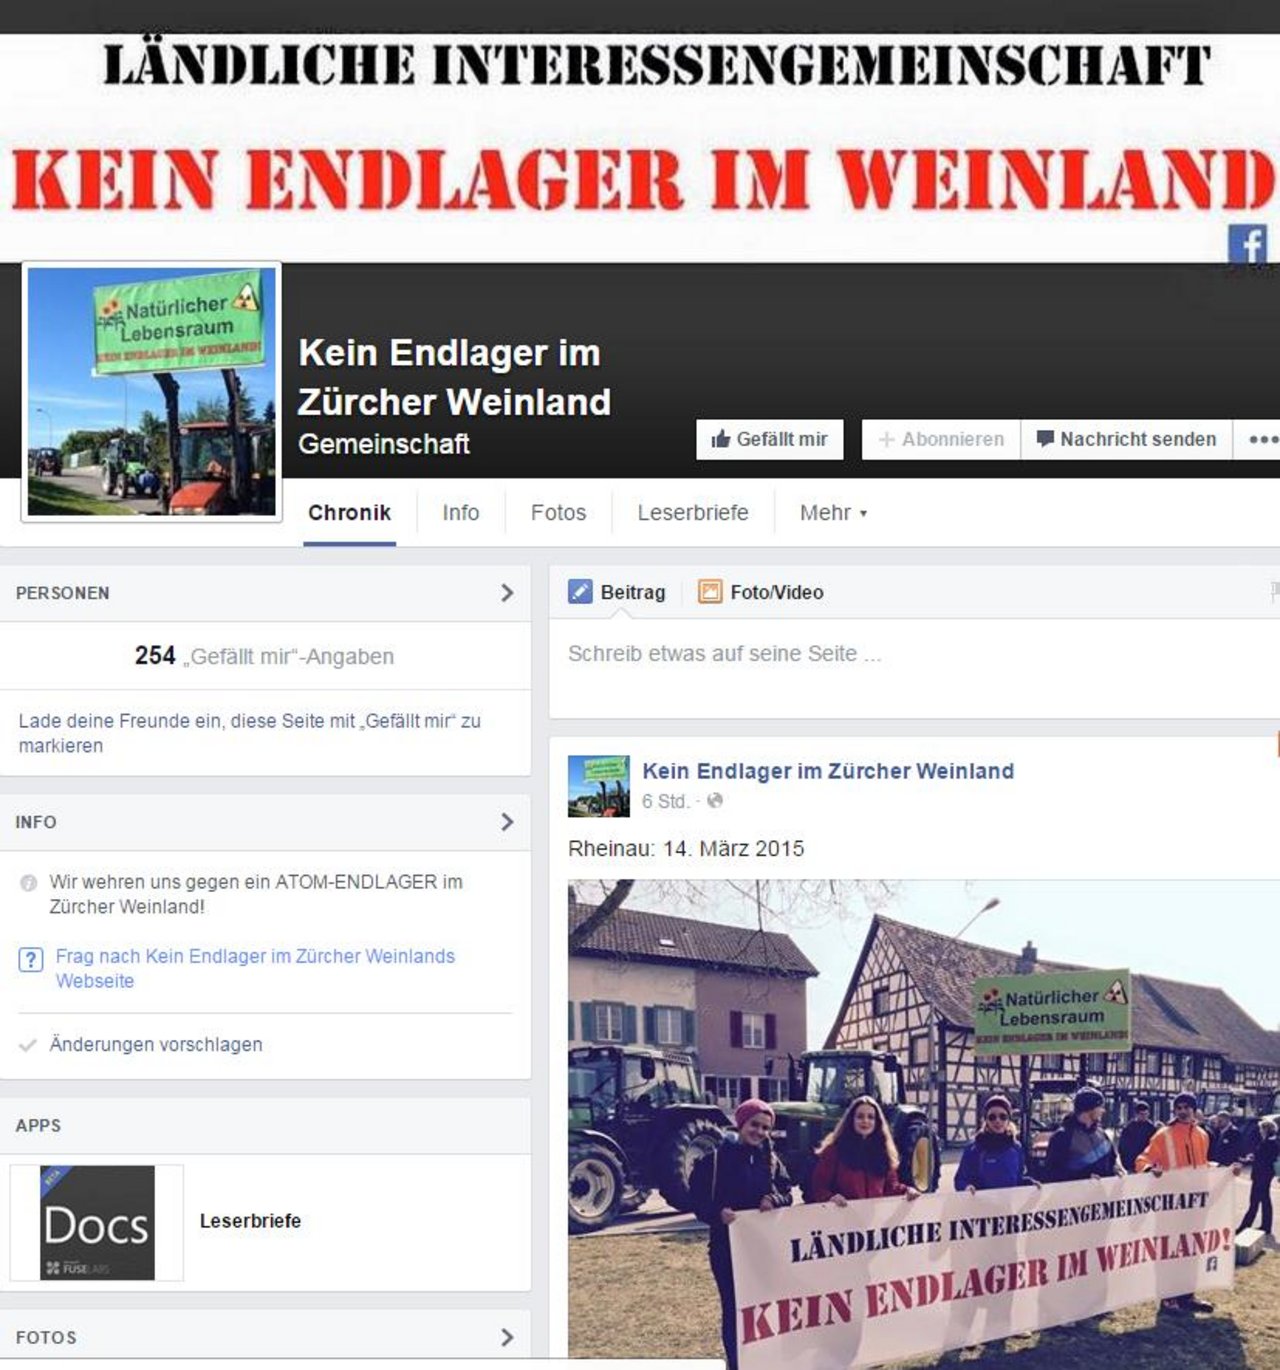 Die Interessengemeinschaft macht derzeit auf Facebook Mobil gegen die Endlagerung im Zürcher Weinland. (Bild Bildschirmausschnitt der Facebook-Gruppe)